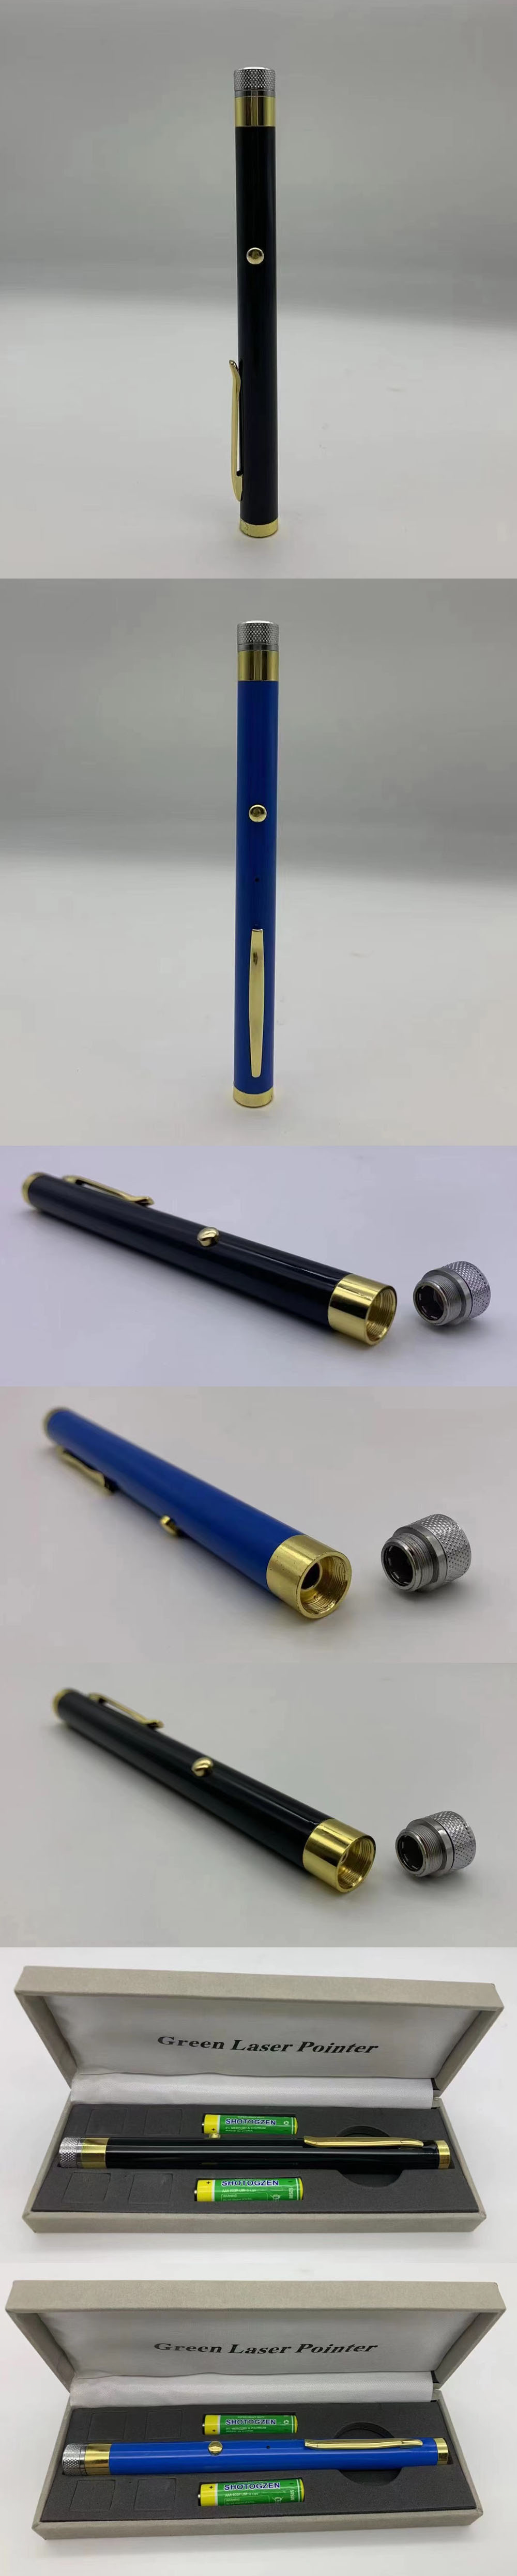 Penna laser giallo